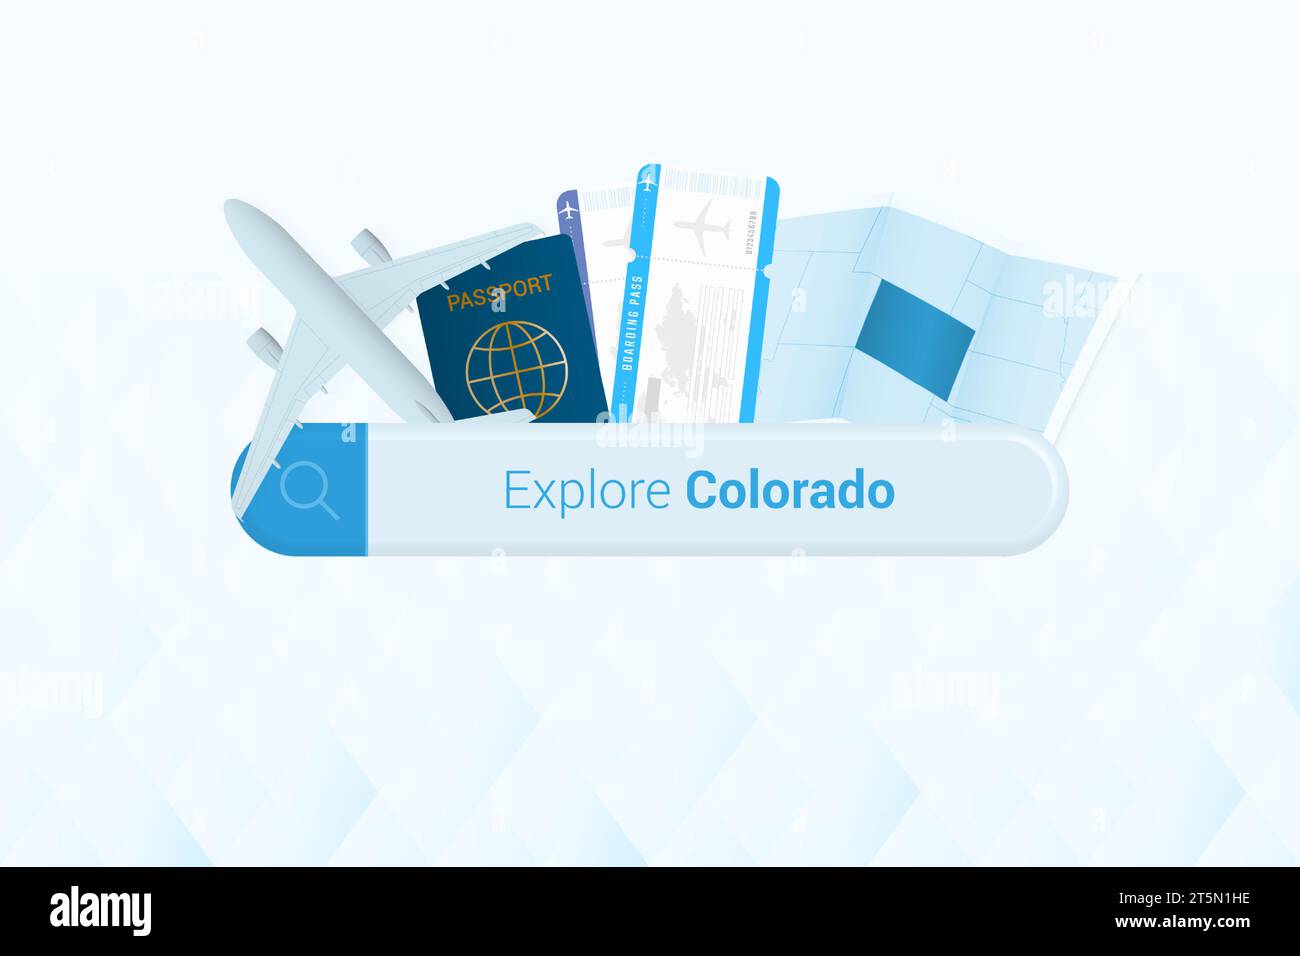 Suche nach Tickets für Colorado oder Reiseziel in Colorado. Suchleiste mit Flugzeug, Reisepass, Bordkarte, Tickets und Karte. Vektorillustr Stock Vektor